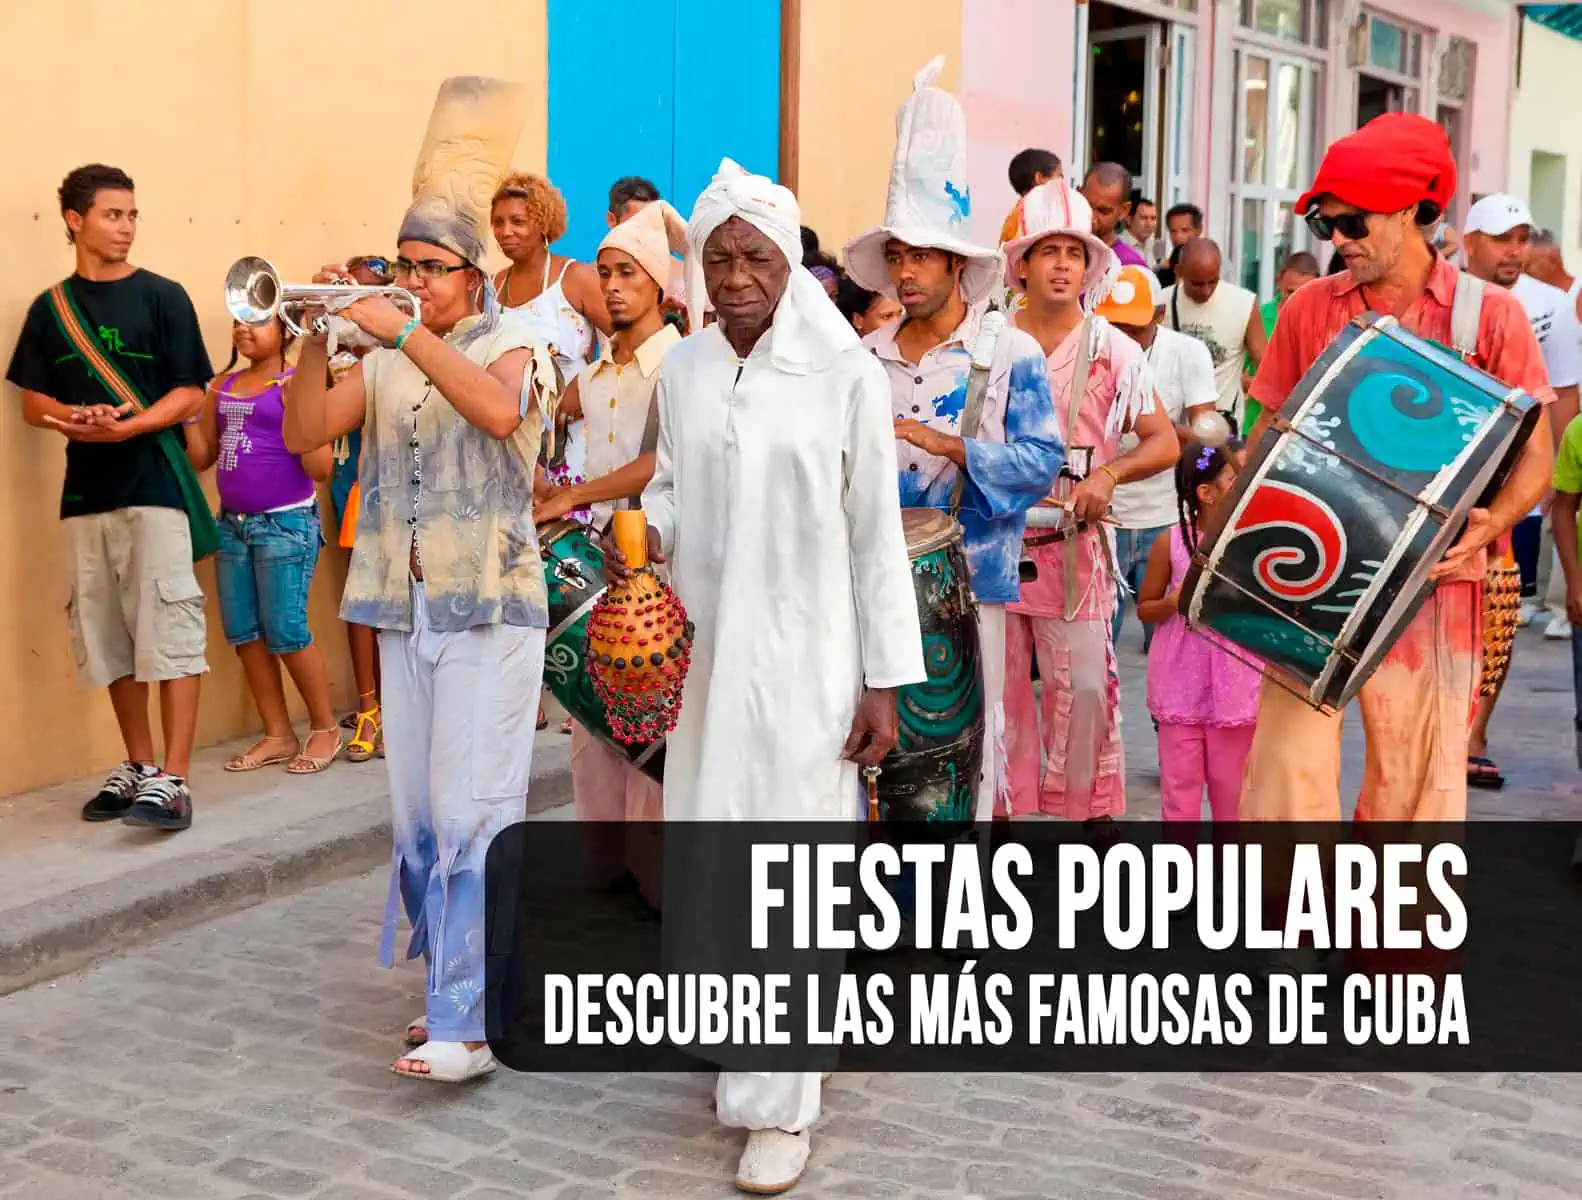 ¿Cuáles son las Fiestas Populares más Famosas de Cuba?